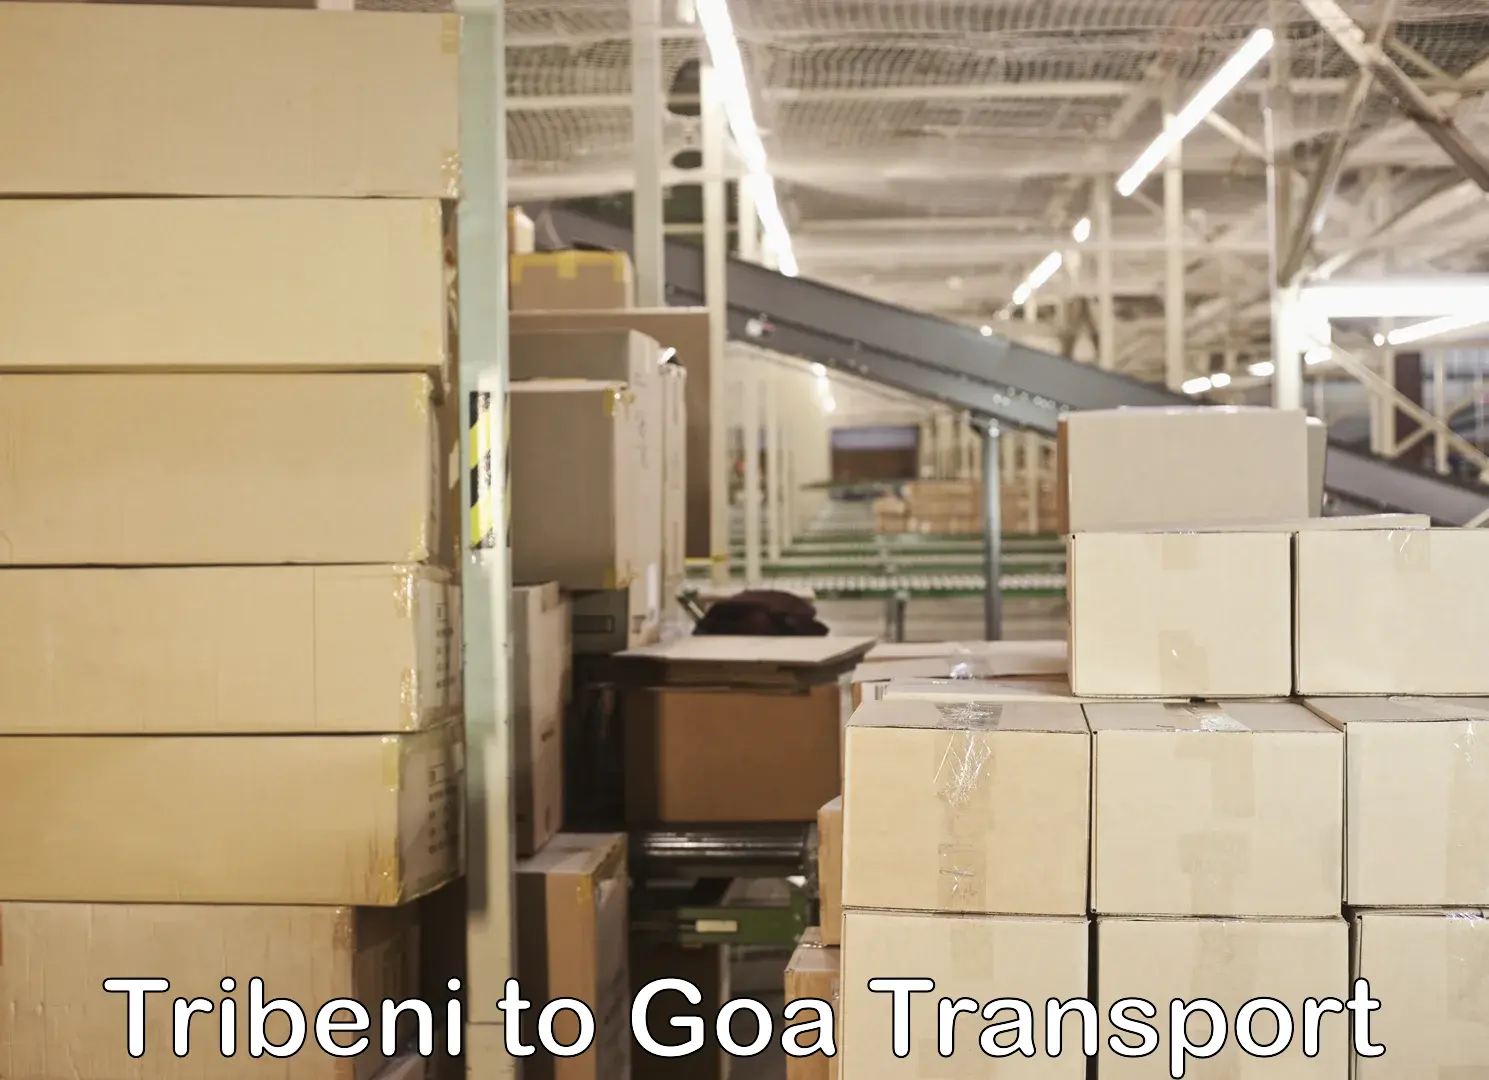 Lorry transport service Tribeni to Goa